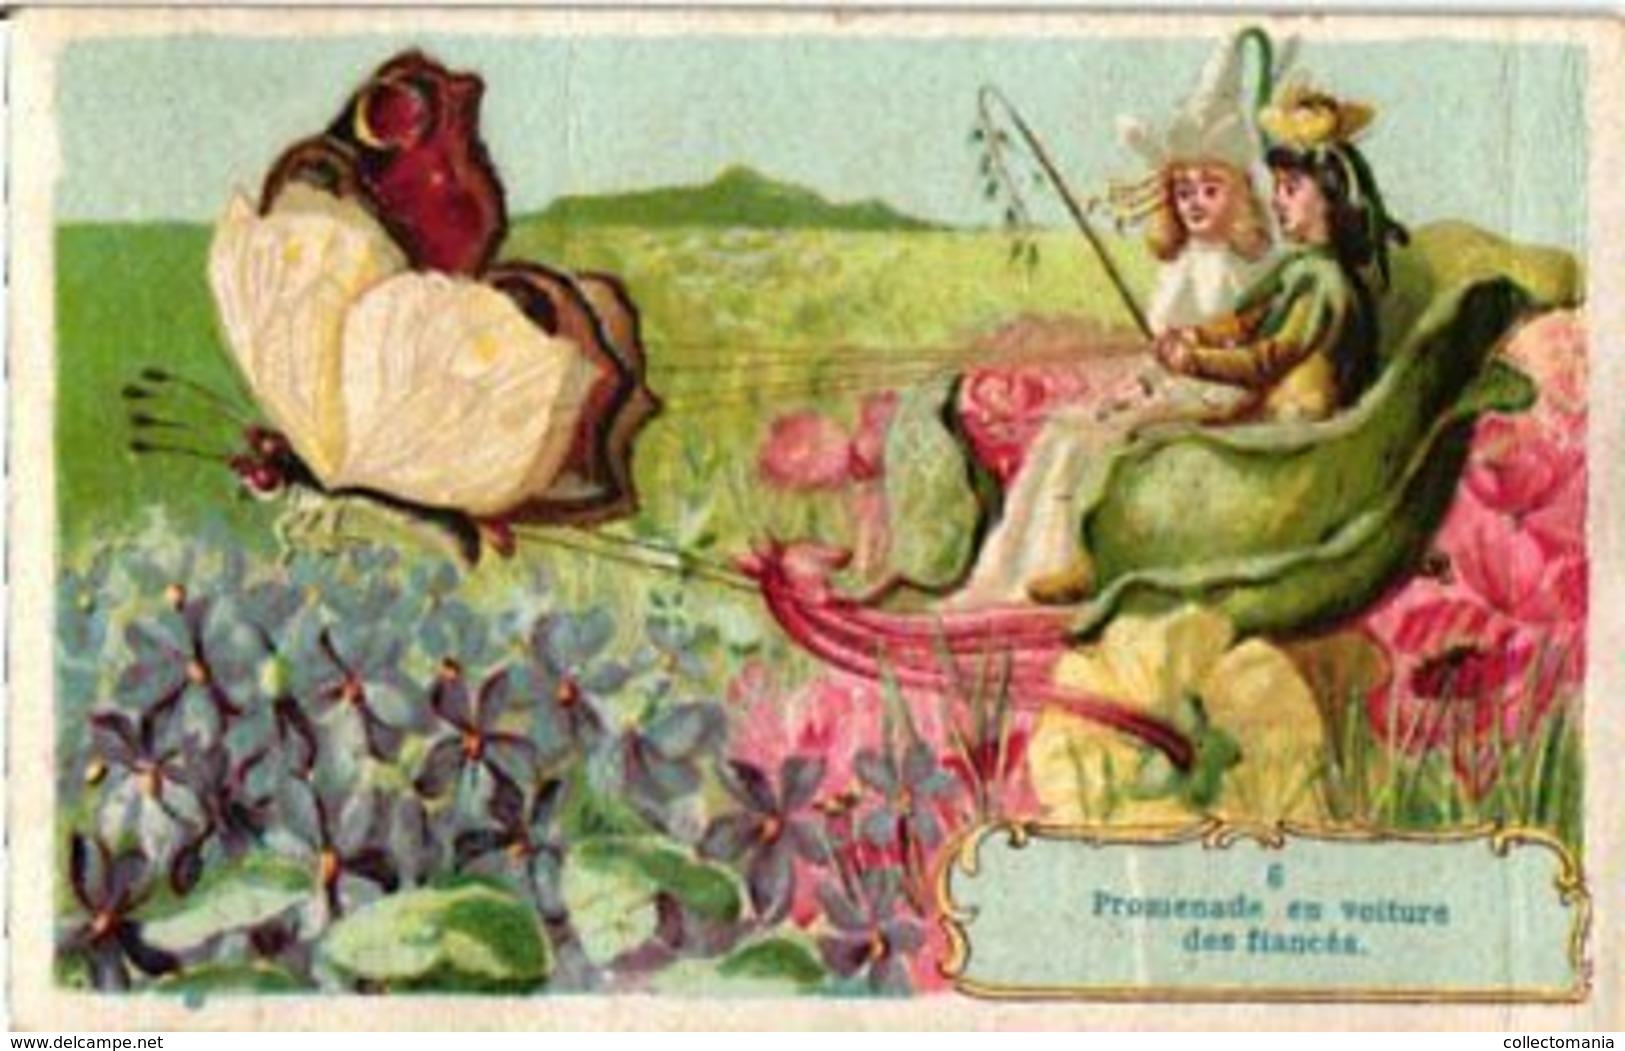 12 cartes, complete série chromos Mariage  des Fleurs Engage Fiancé grasshopper Papillon  Anthropomorph c1900 Litho RARE